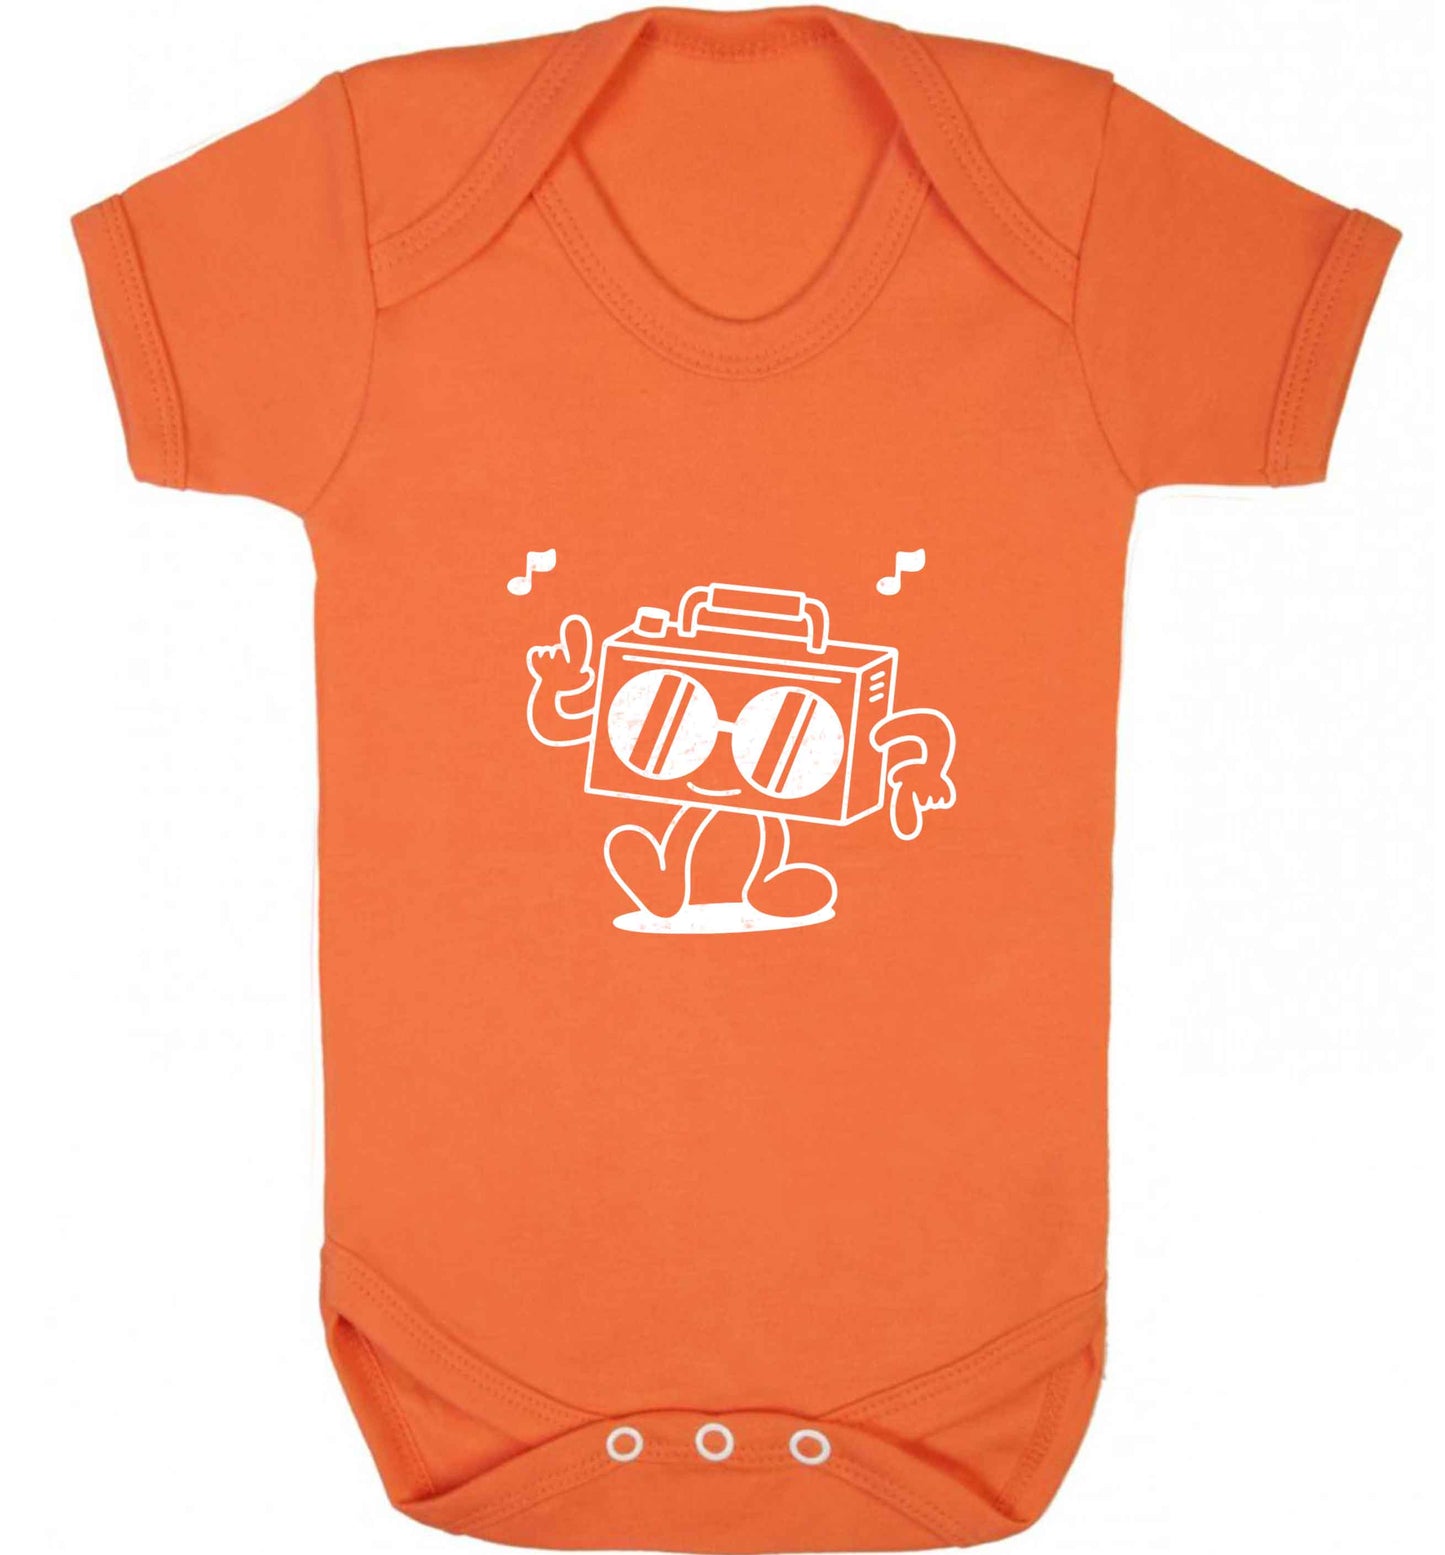 Boombox baby vest orange 18-24 months